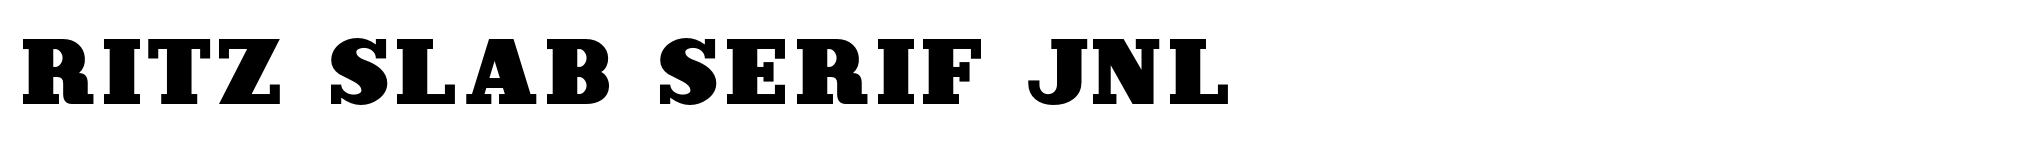 Ritz Slab Serif JNL image